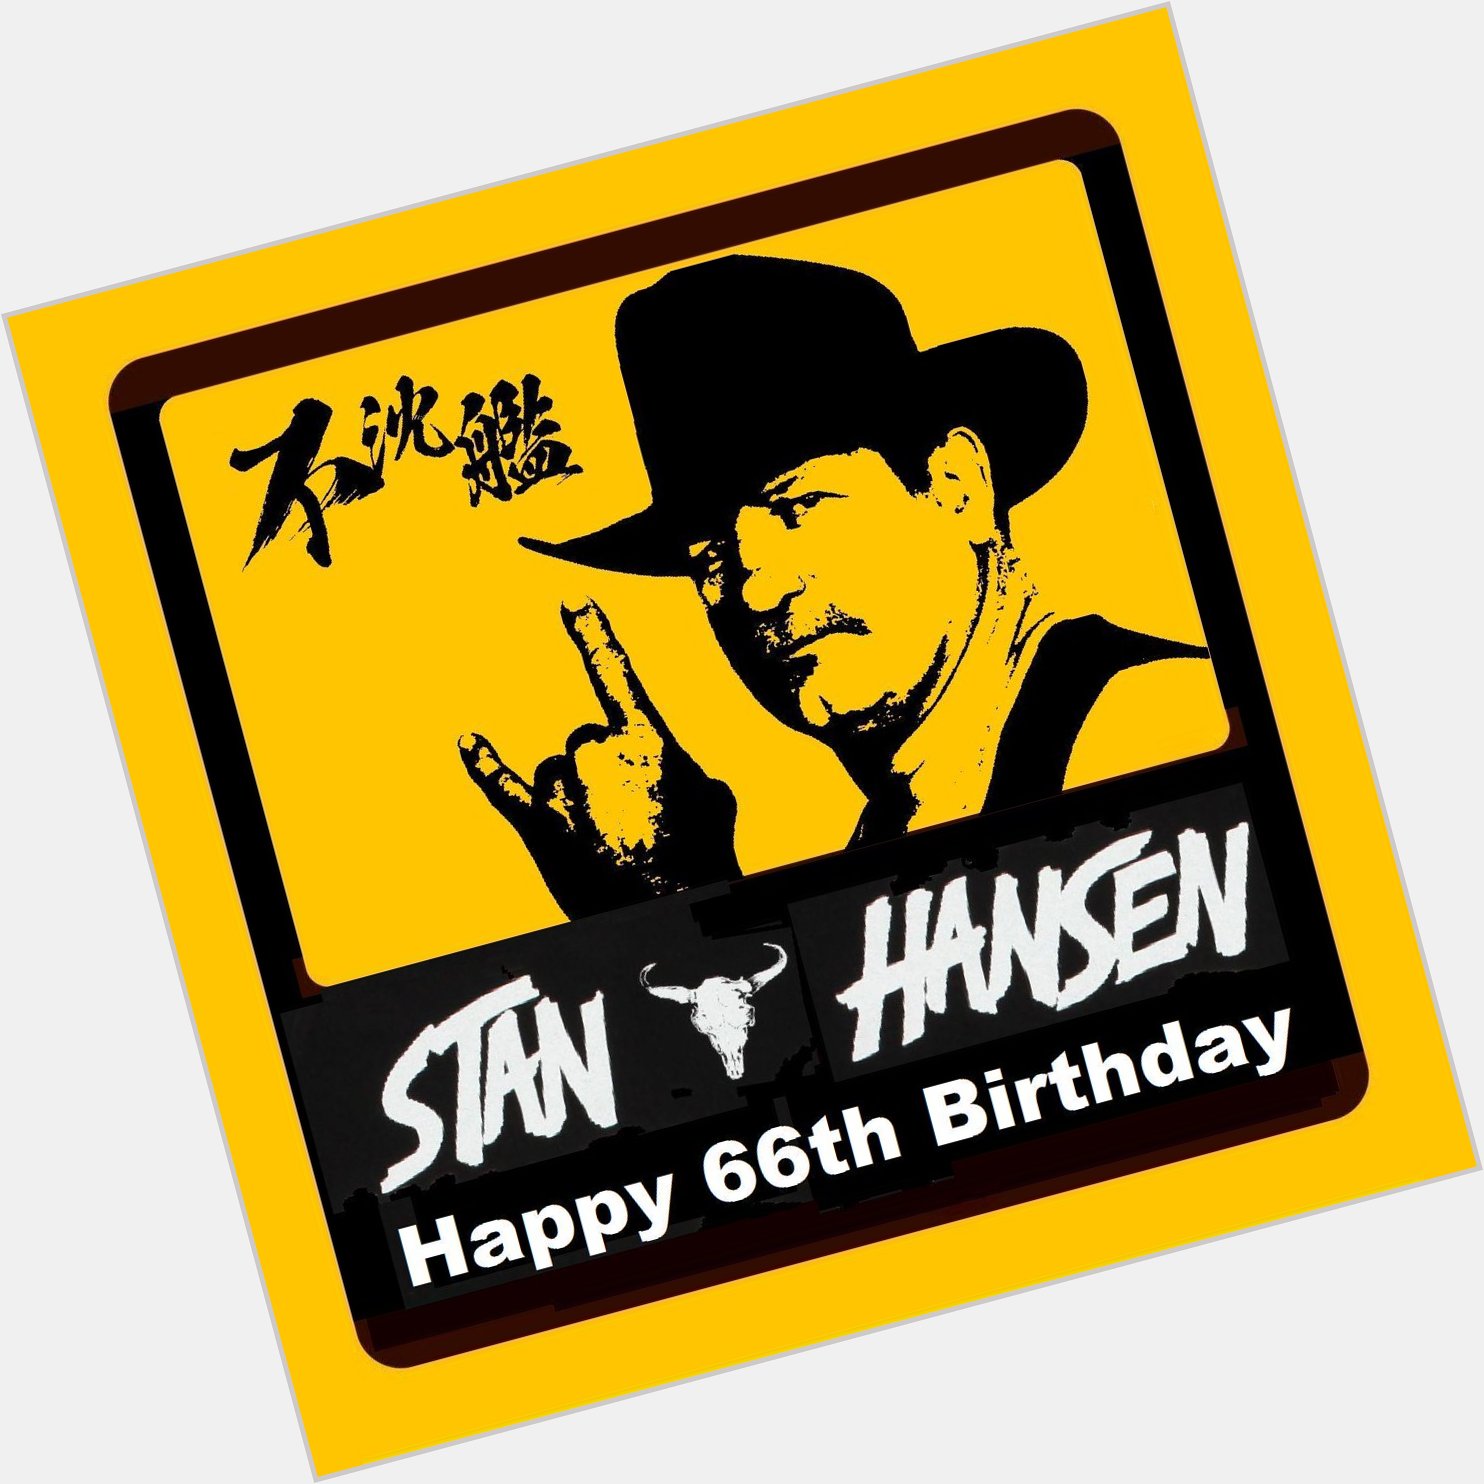  Happy 66th Birthday Stan Hansen \\m/     66  Wii \\m/   